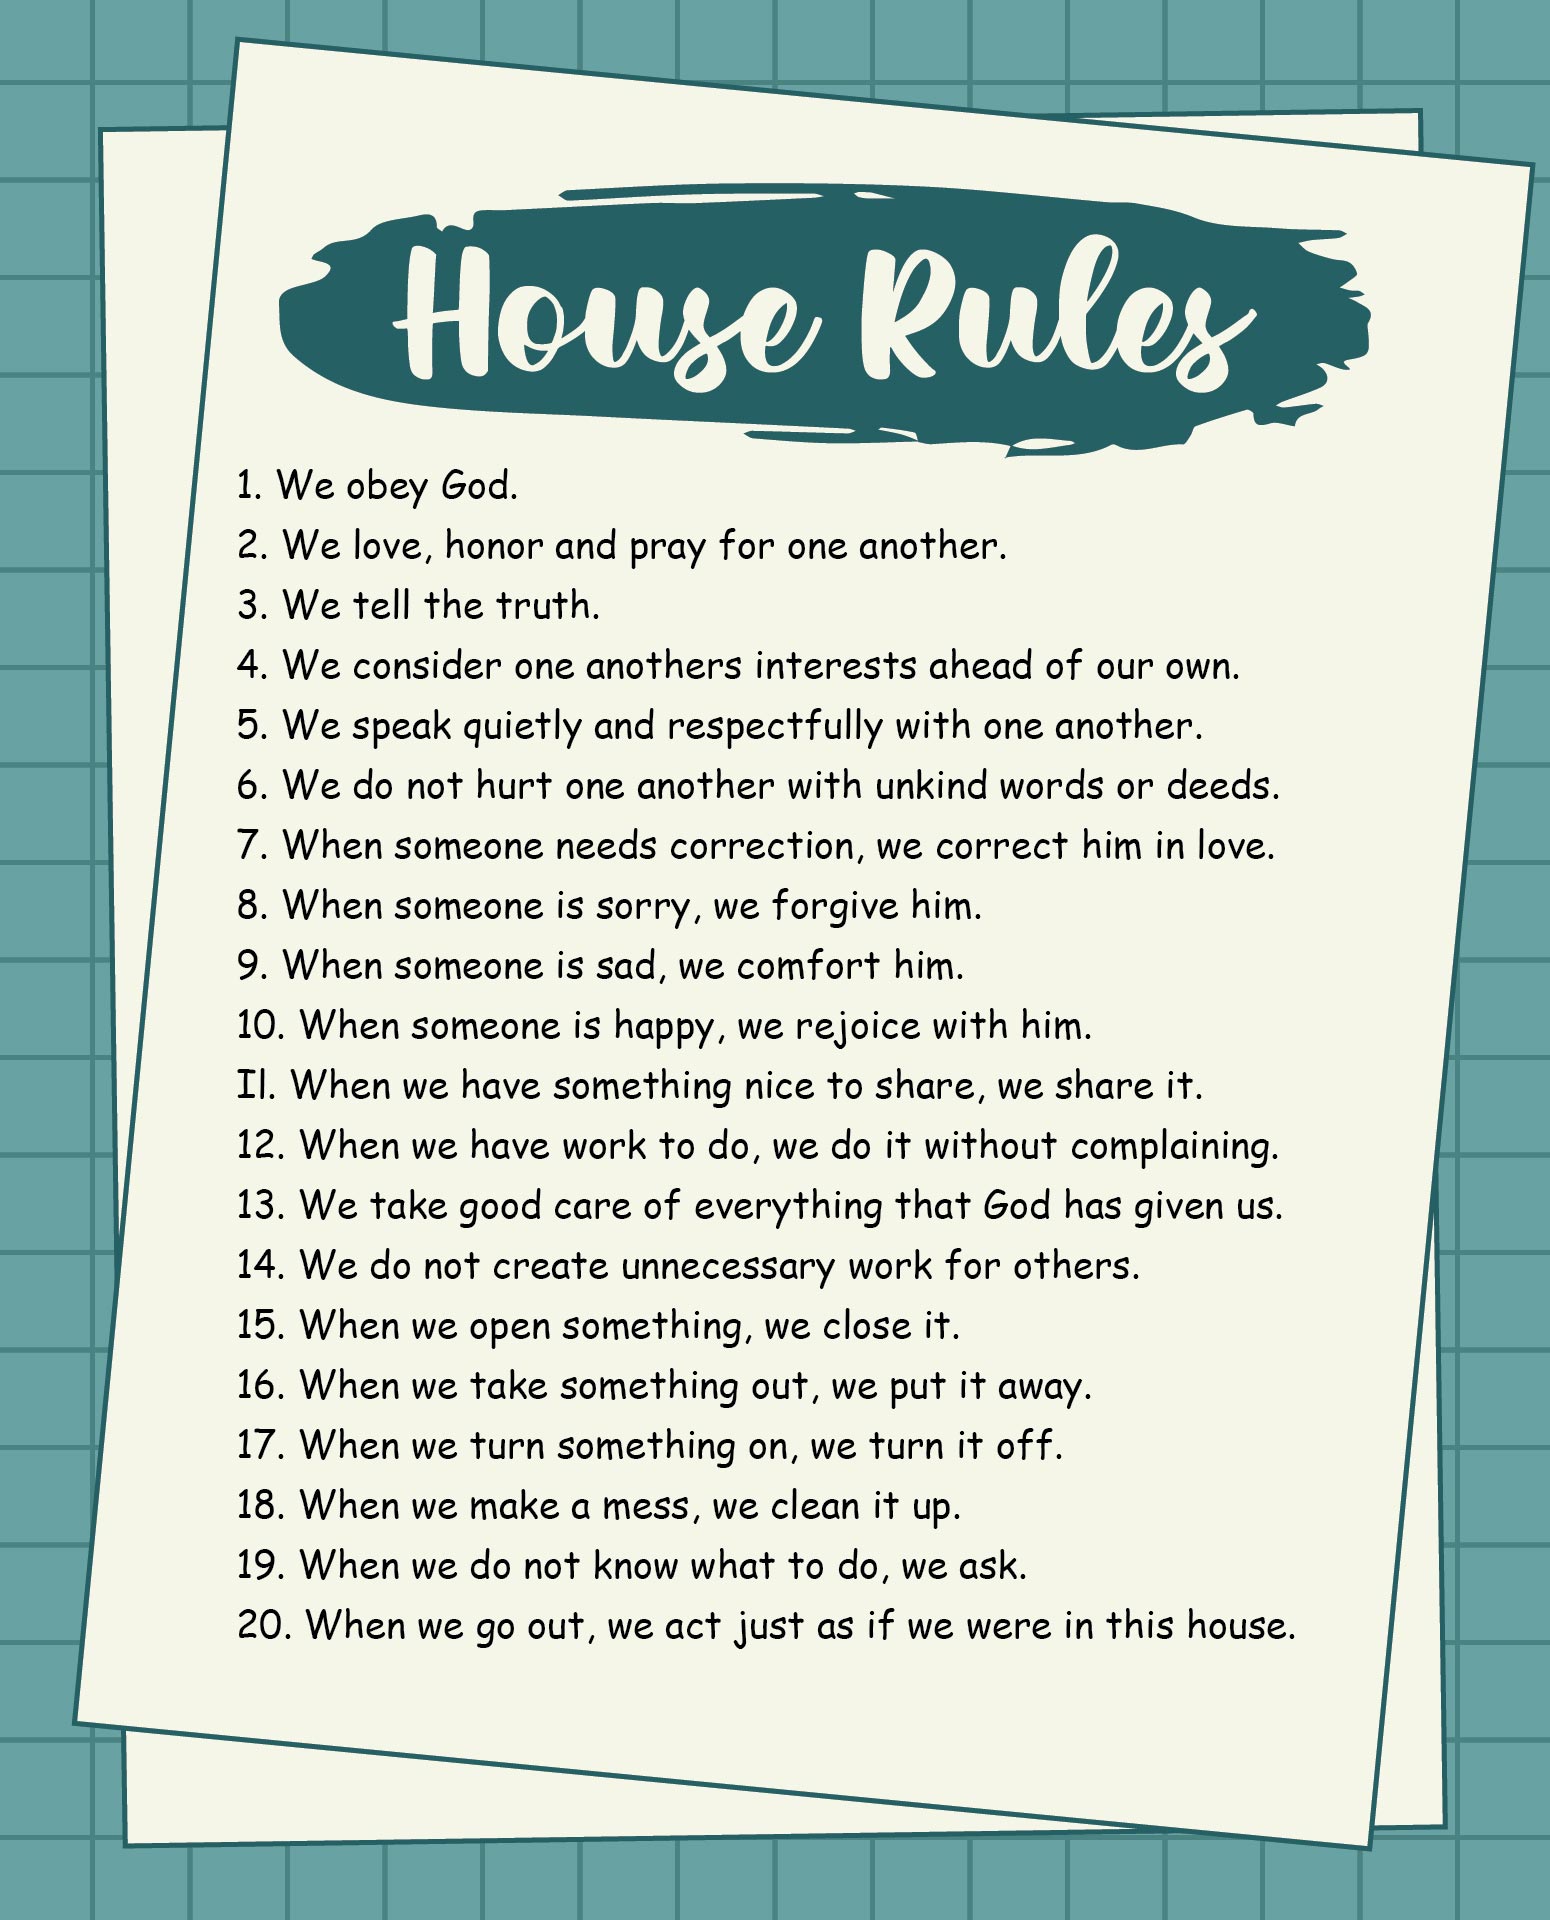 House Rules List 17261 